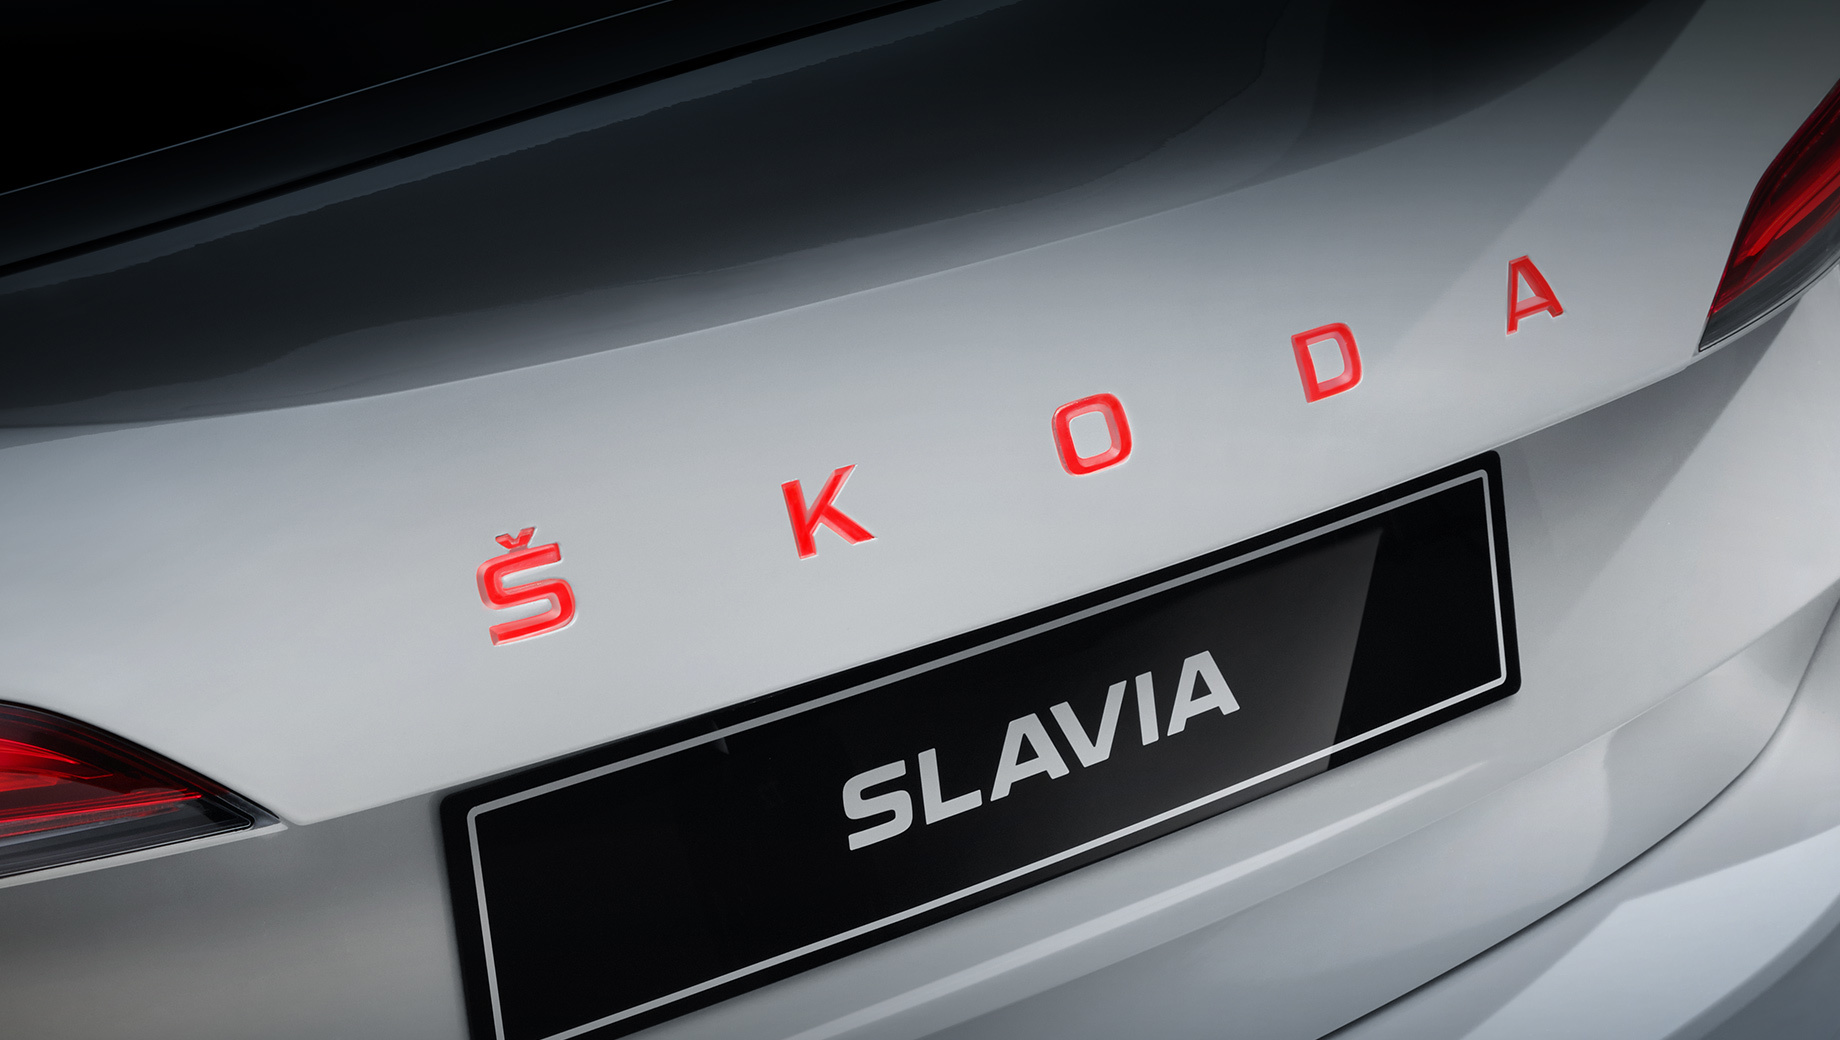 Skoda scala,Skoda scala spider,Skoda slavia. К 125-летию со дня рождения Шкоды проект получил имя Slavia. Под этим брендом с 1895 года отцы-основатели Вацлав Лаурин и Вацлав Клемент производили велосипеды, мопеды и мотоциклы.